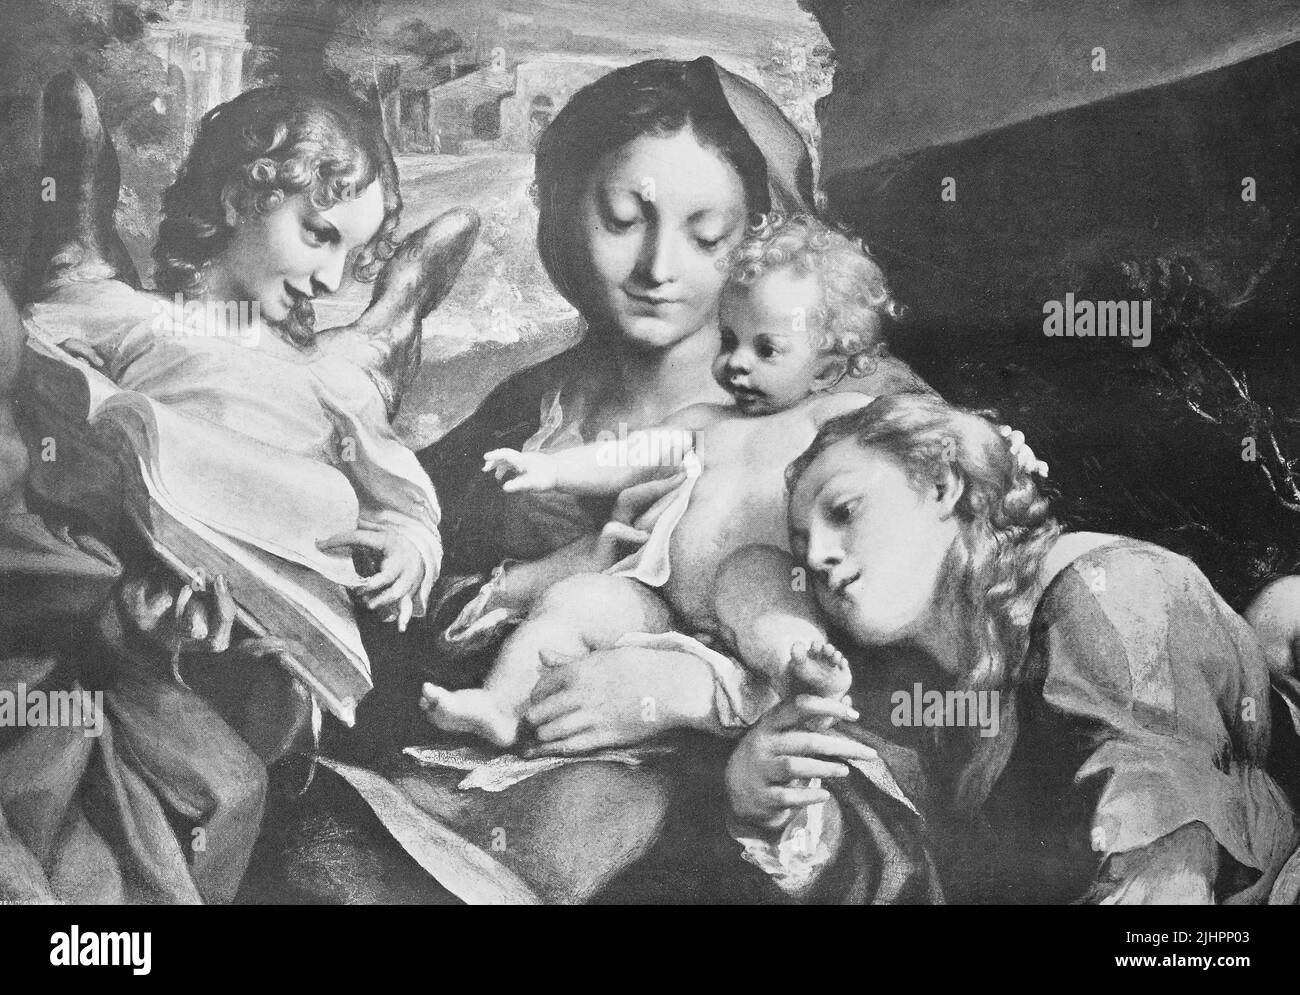 Historisches Foto (ca 1880) der Madonna mit Kind, Gemälde von Antonio da Correggio, Italien / Historisches Foto von Madonna und Kind, Gemälde von Antonio da Correggio, Italien, Historisch, digital restaurierte Reproduktion einer Originalvorlage aus dem 19. Jahrhundert, das Originaldatum nicht bekannt, Stockfoto